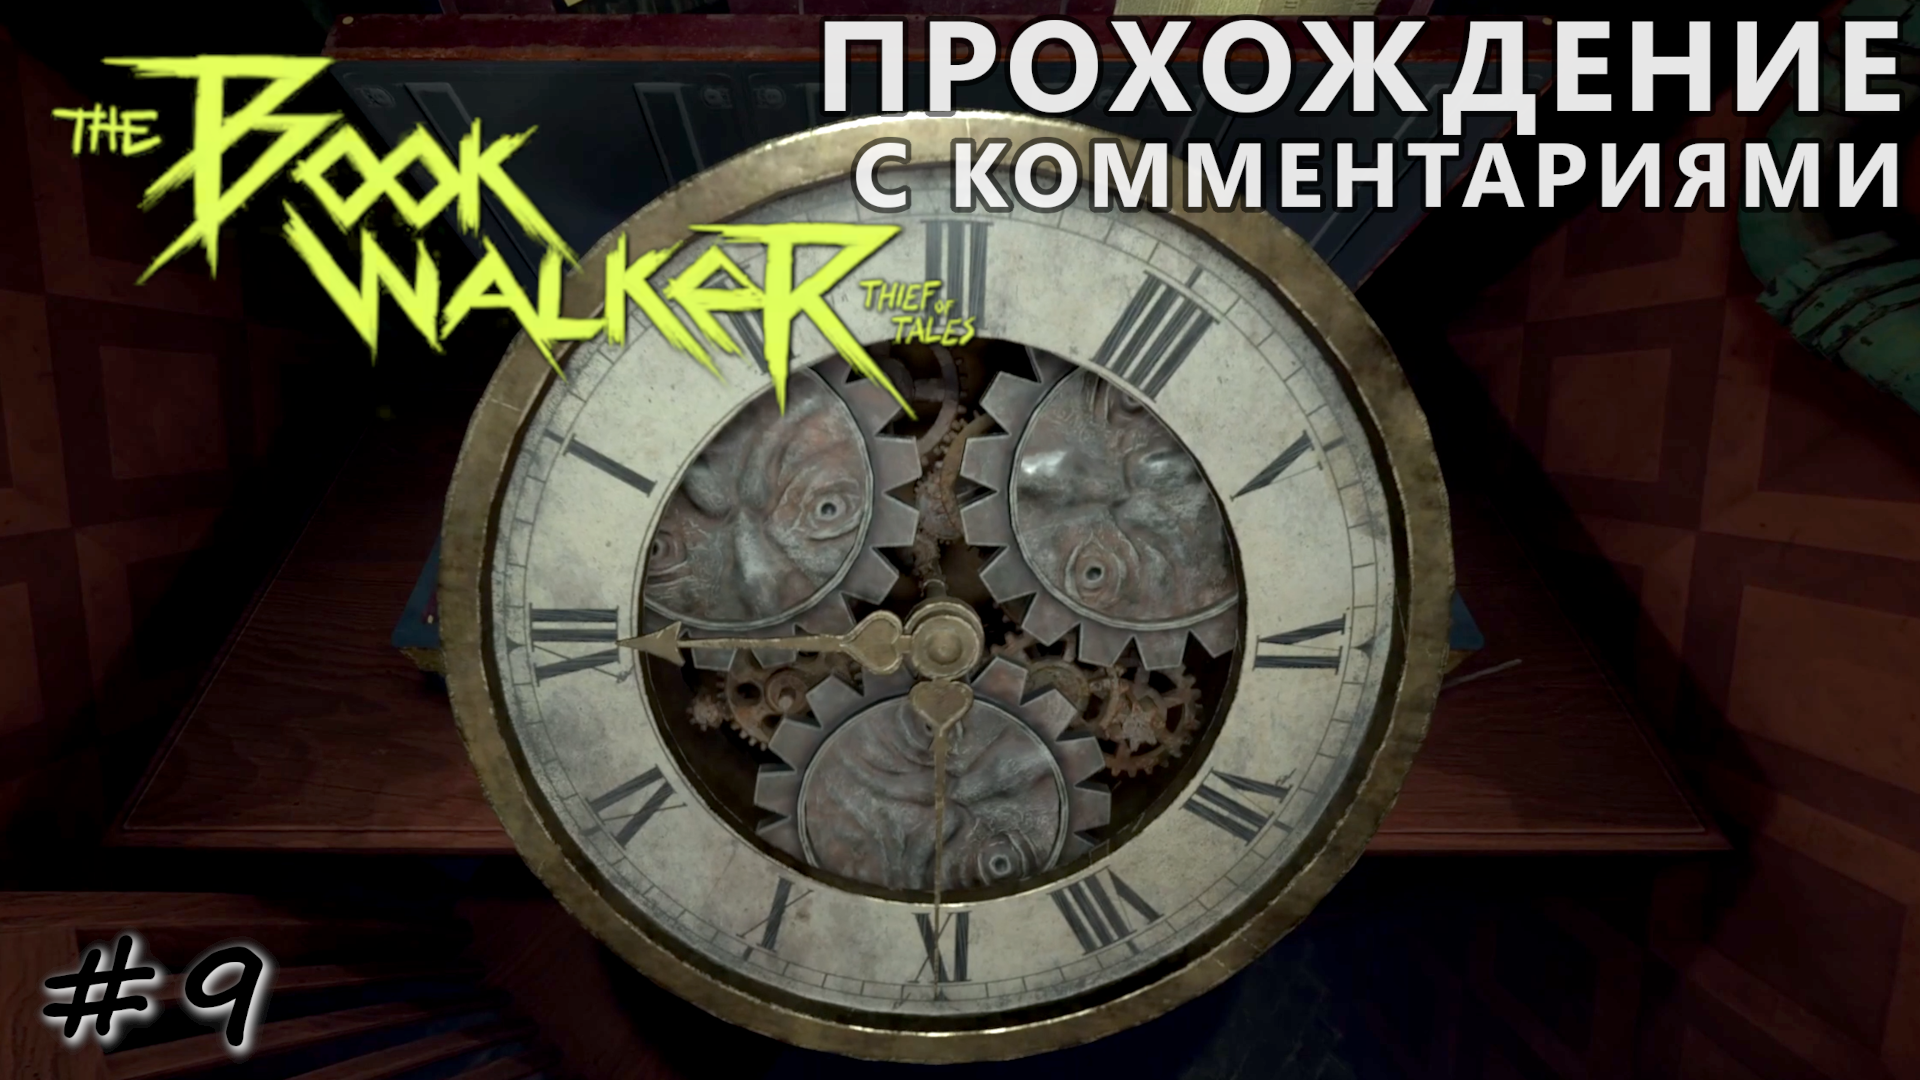 Тайна проклятых часов хозяина поместья - #9 - The Bookwalker